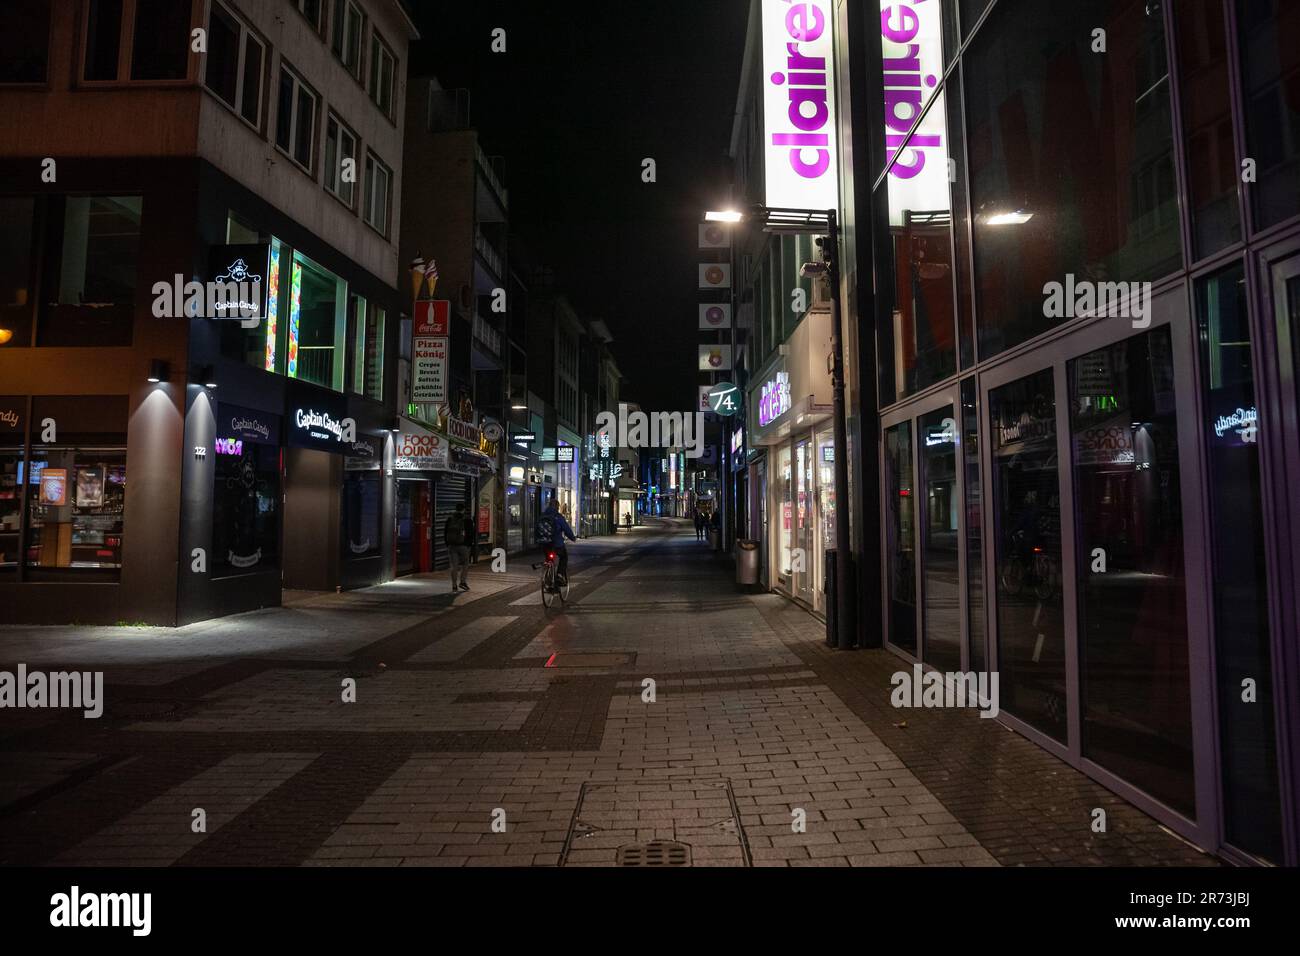 Foto di Hohe Strasse con negozi e negozi chiusi di notte a Colonia, Germania. Hohe Straße è una strada commerciale nel centro storico di Colonia, in Germania Foto Stock